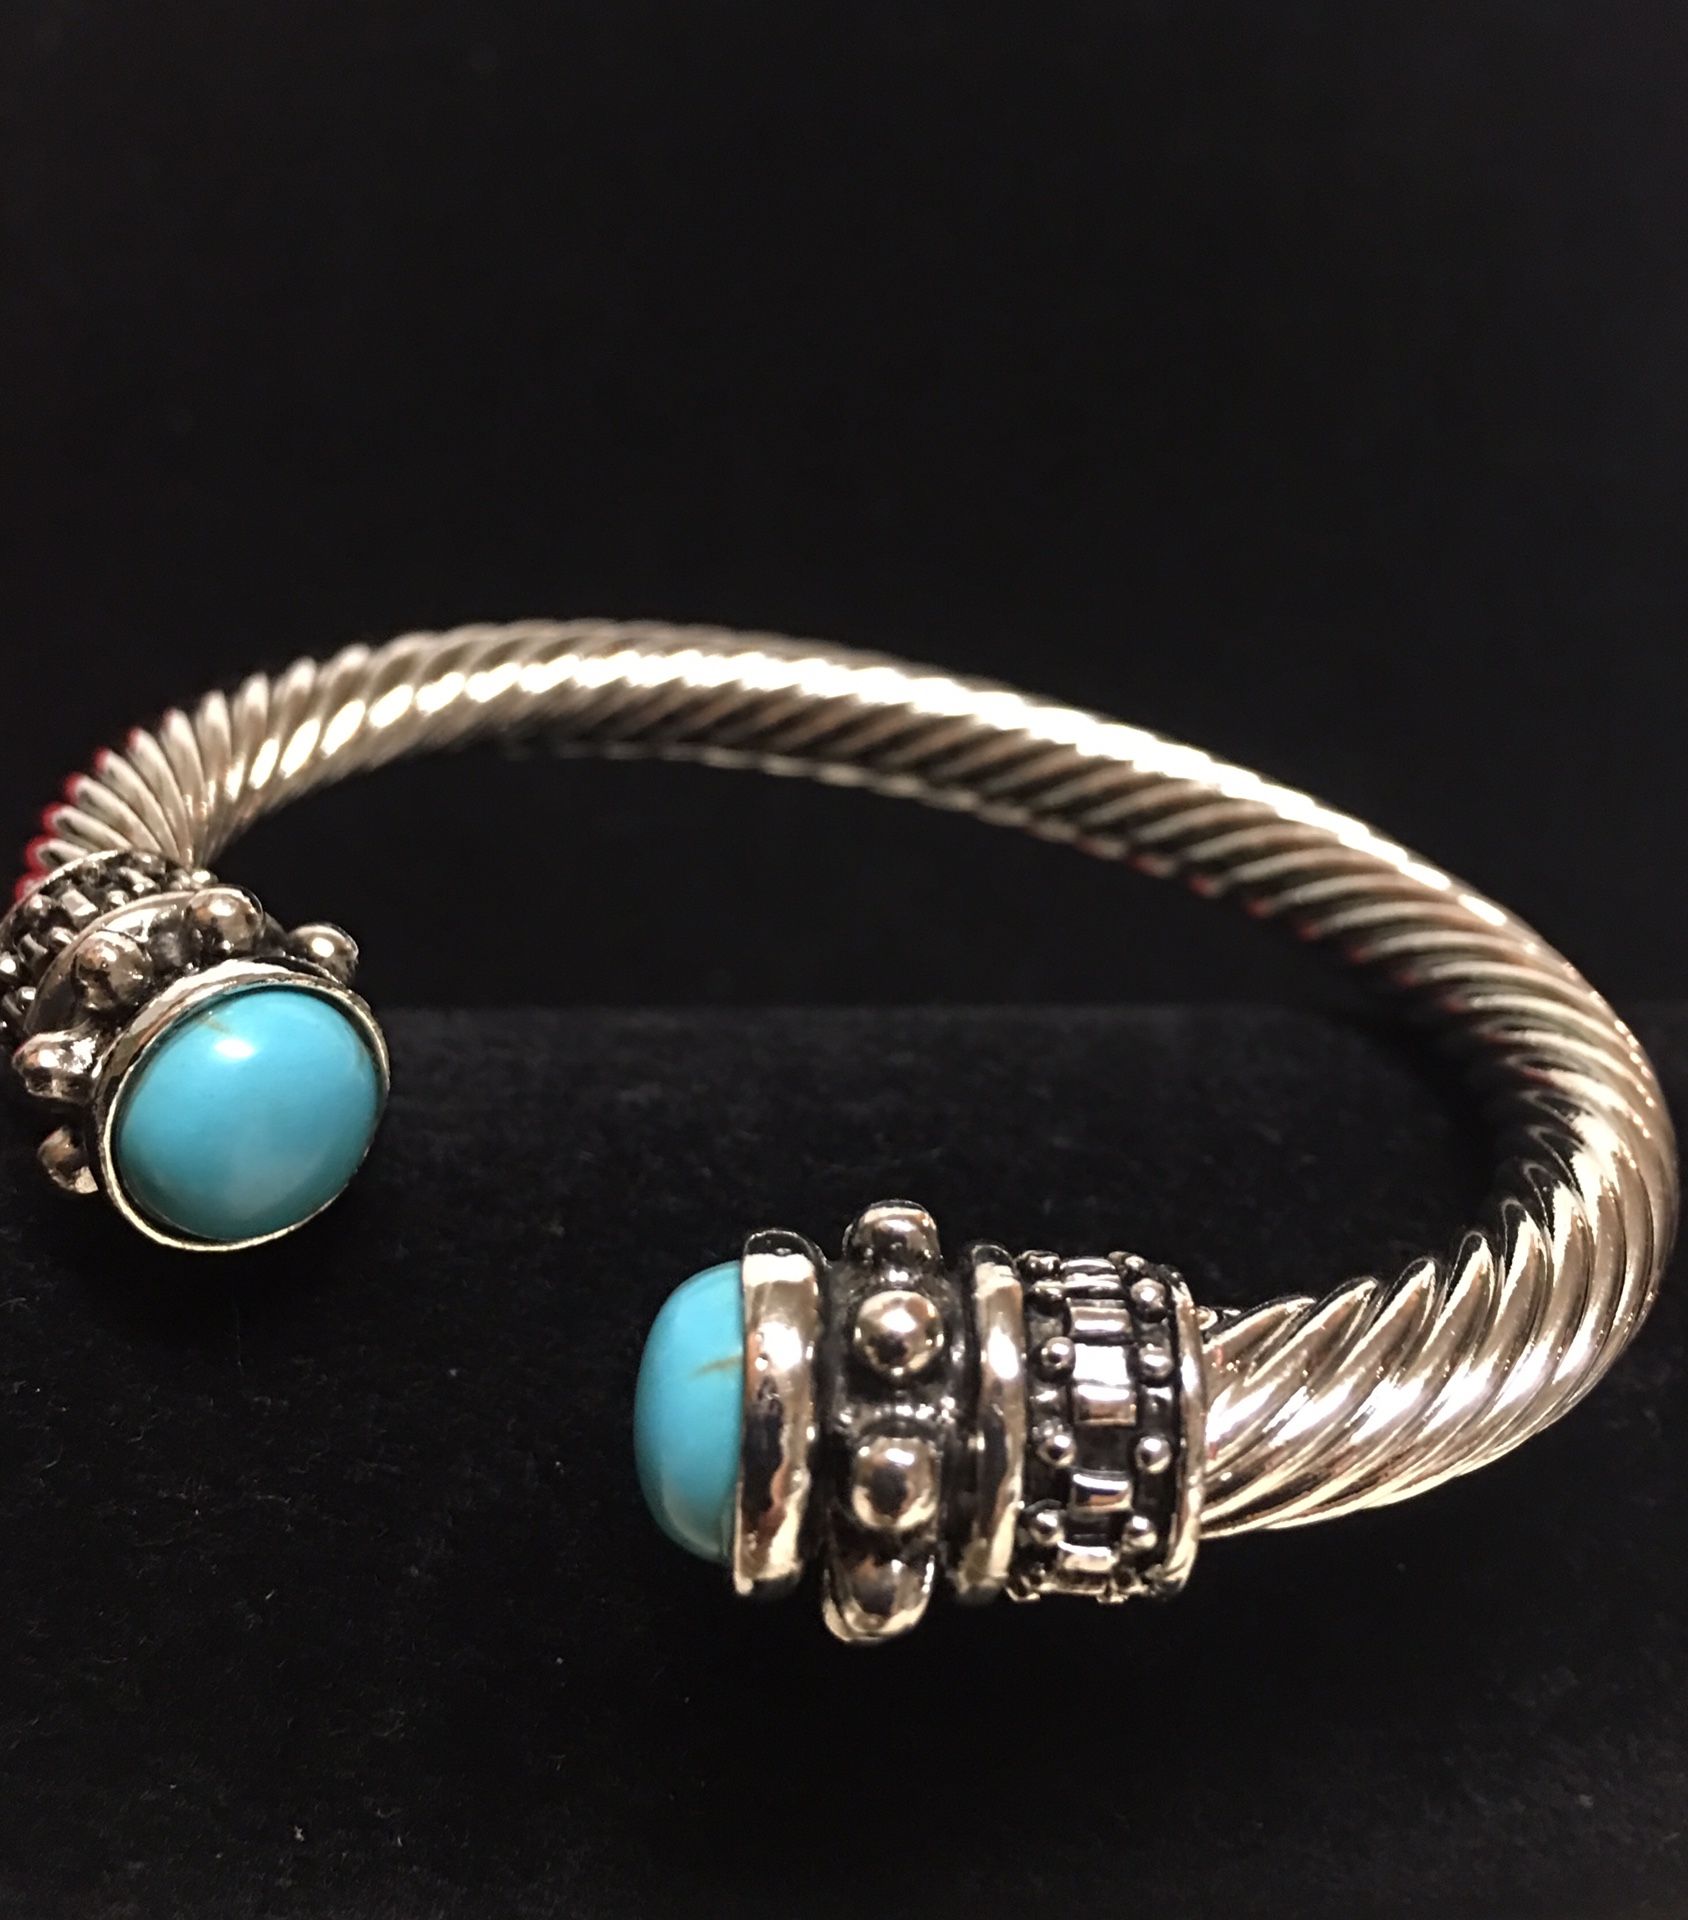 Bracelet turquoise stone